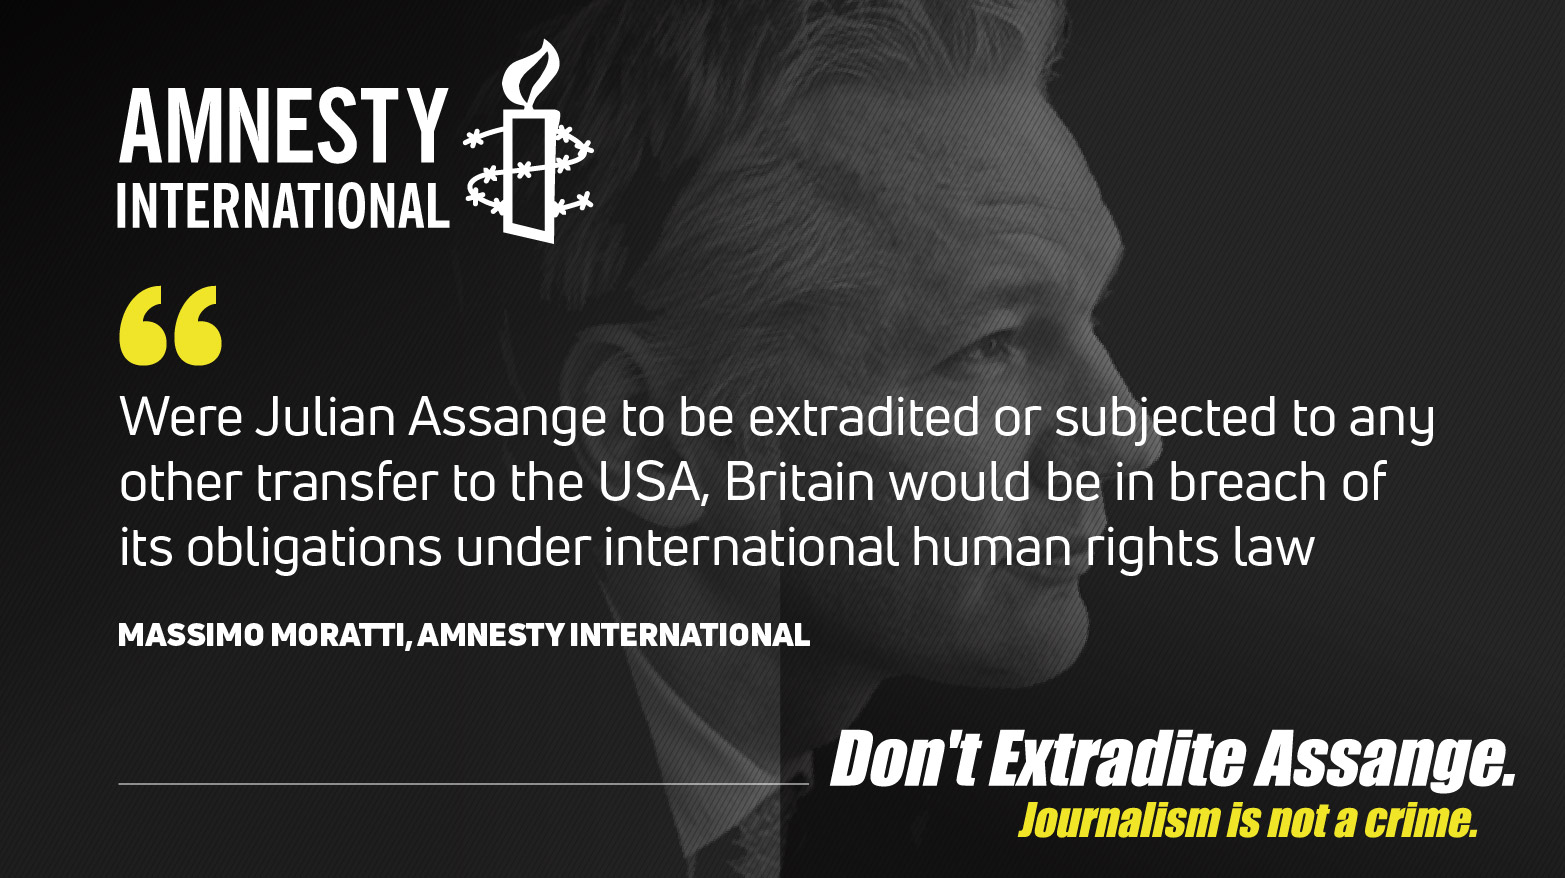 assange-quotes2-amnesty.jpg